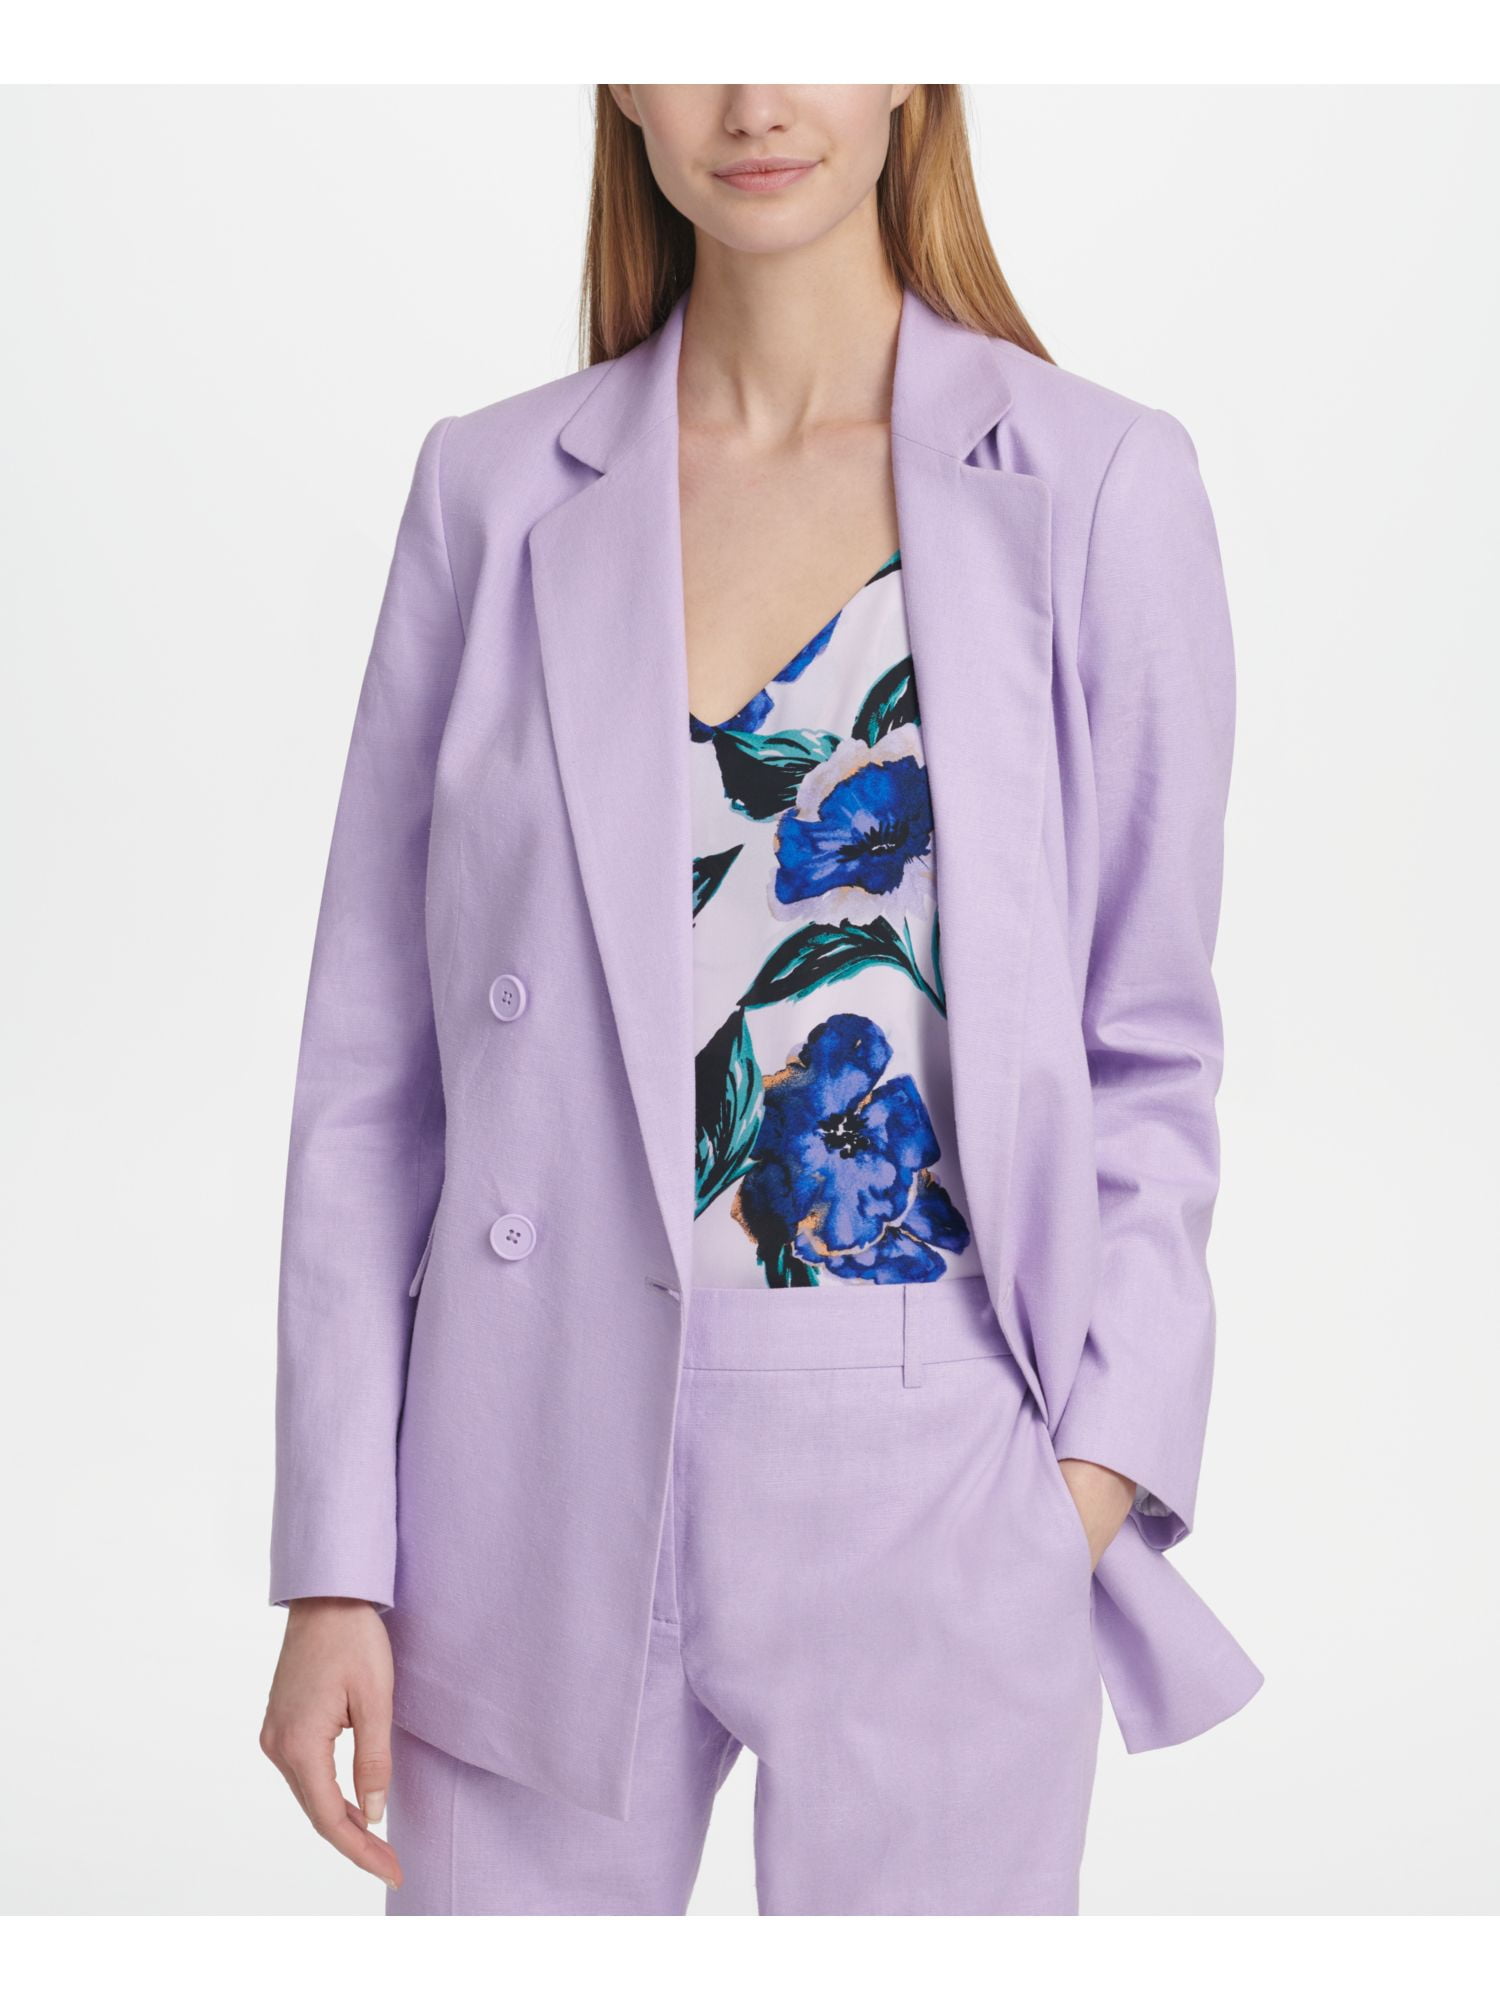 DKNY Womens Purple Blazer Wear To Work 